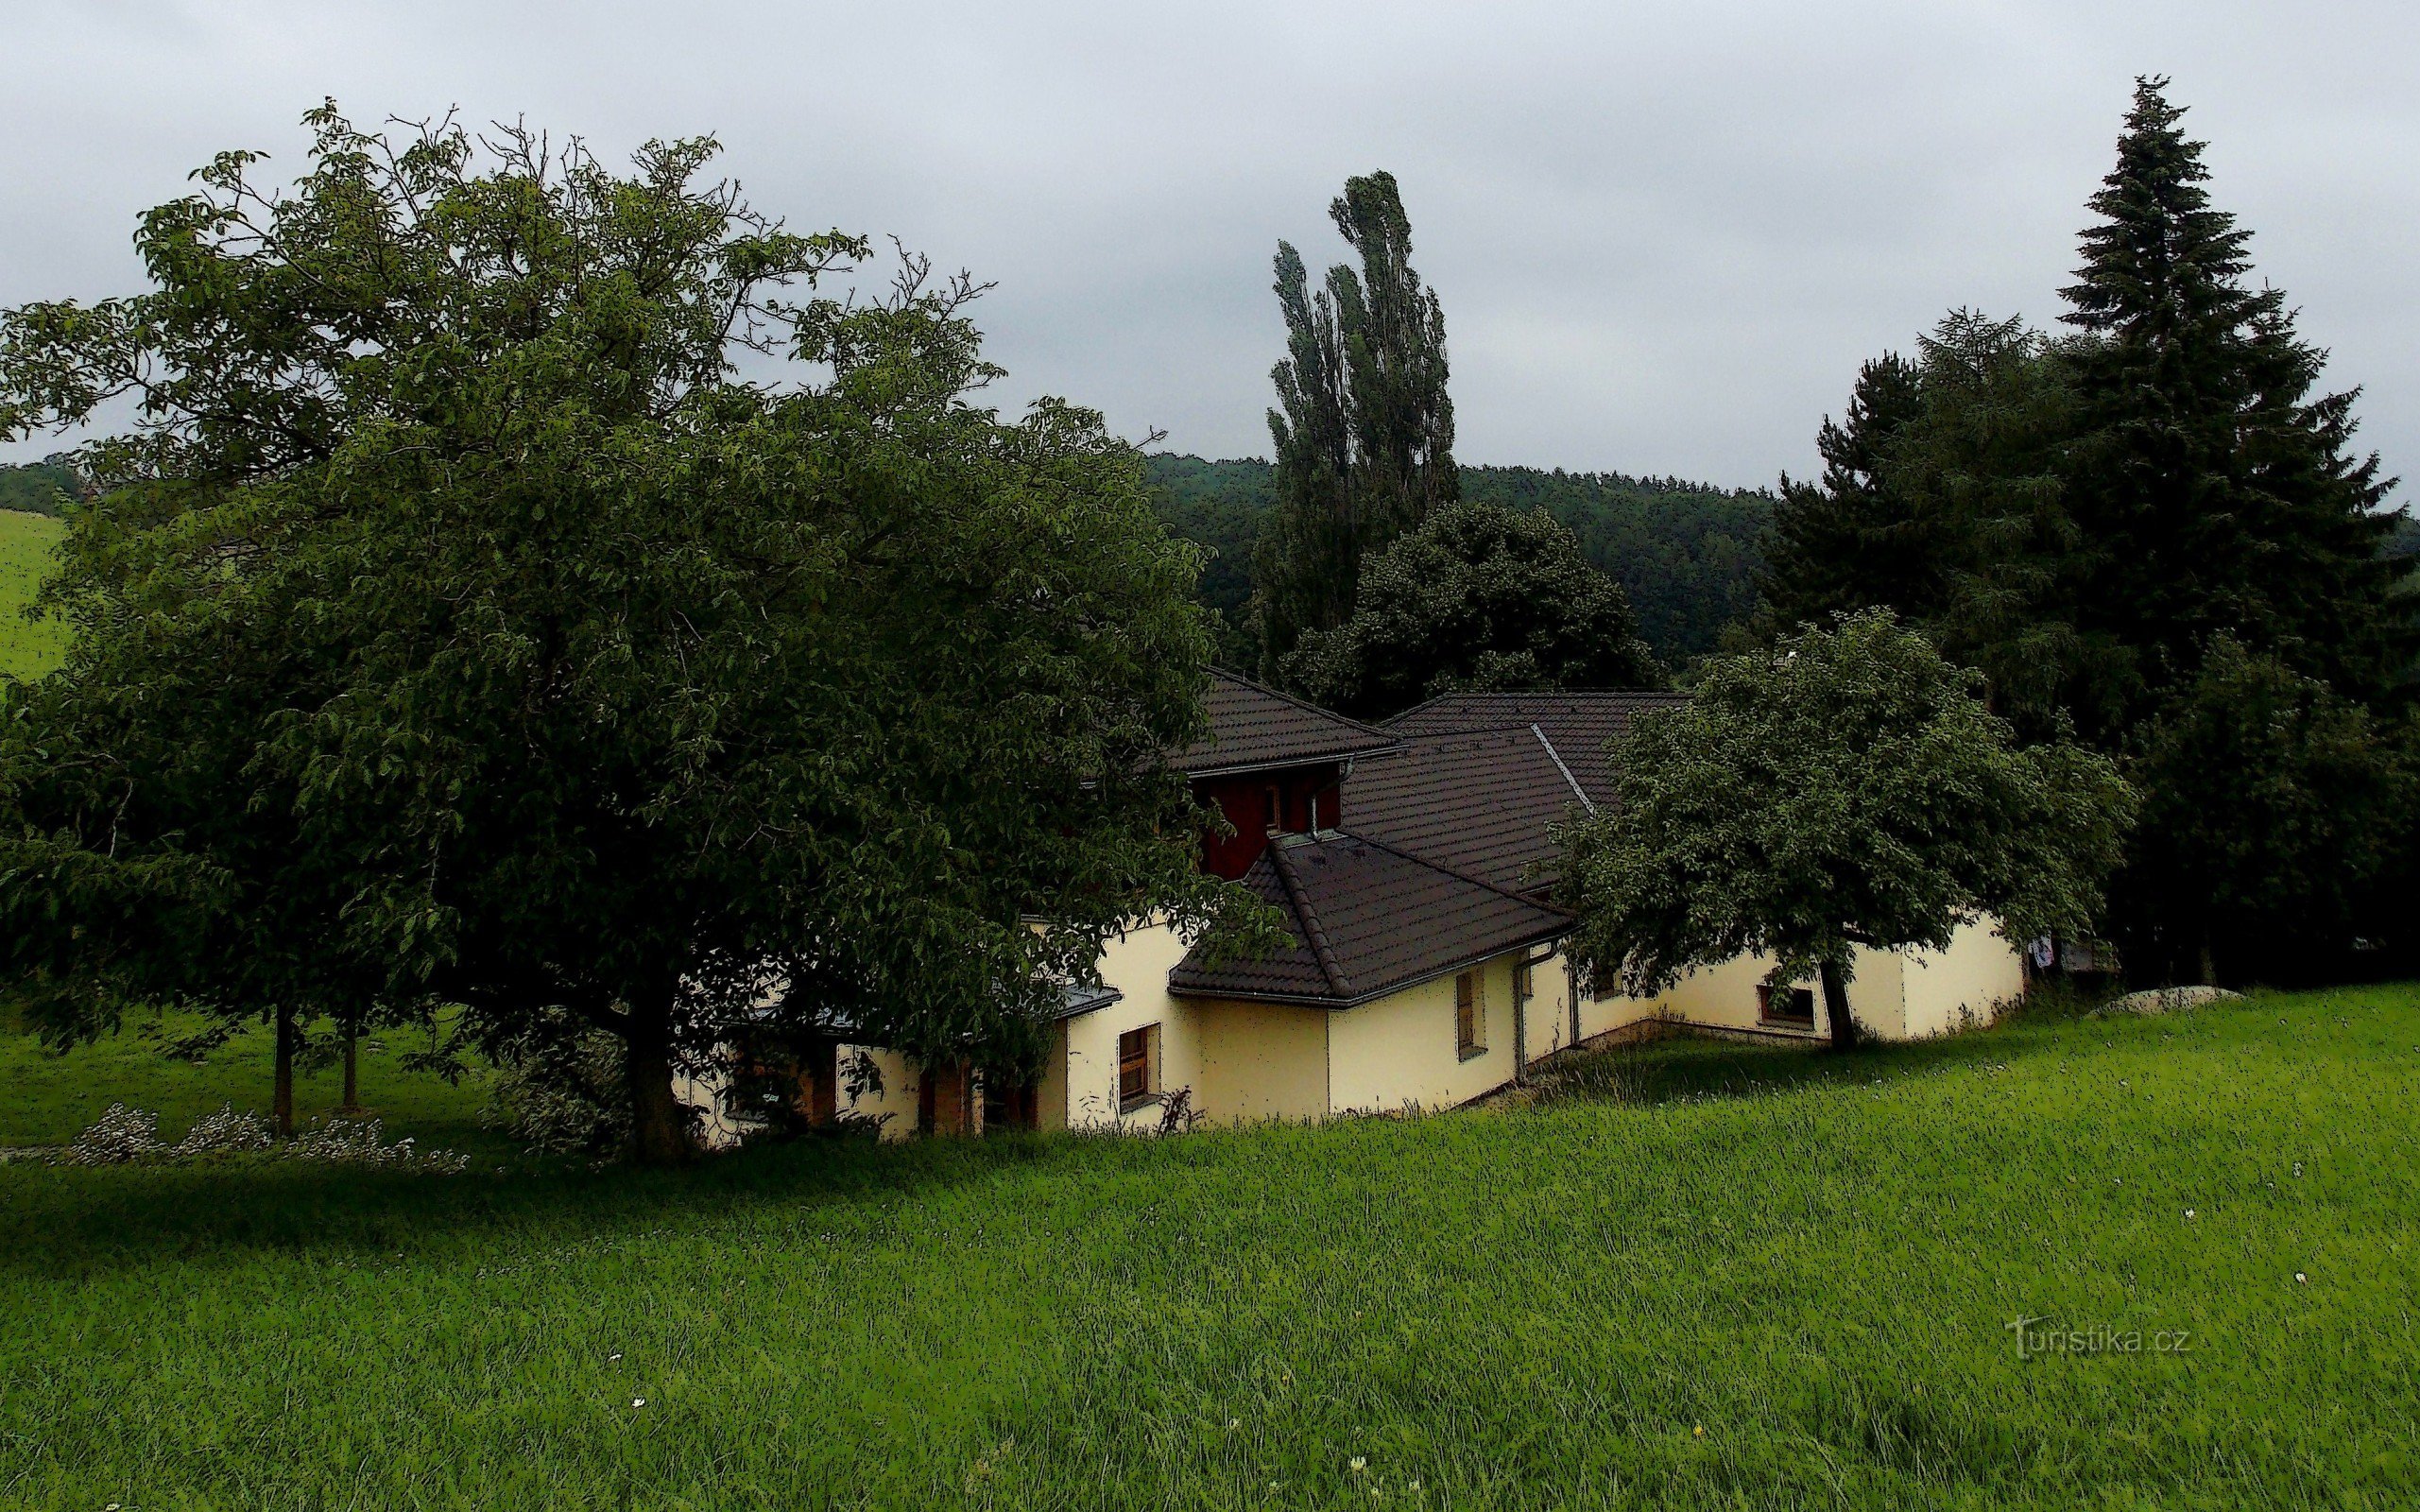 Μια καλοκαιρινή βόλτα γύρω από το Zlín μέσα από τα ξέφωτα Želechovice